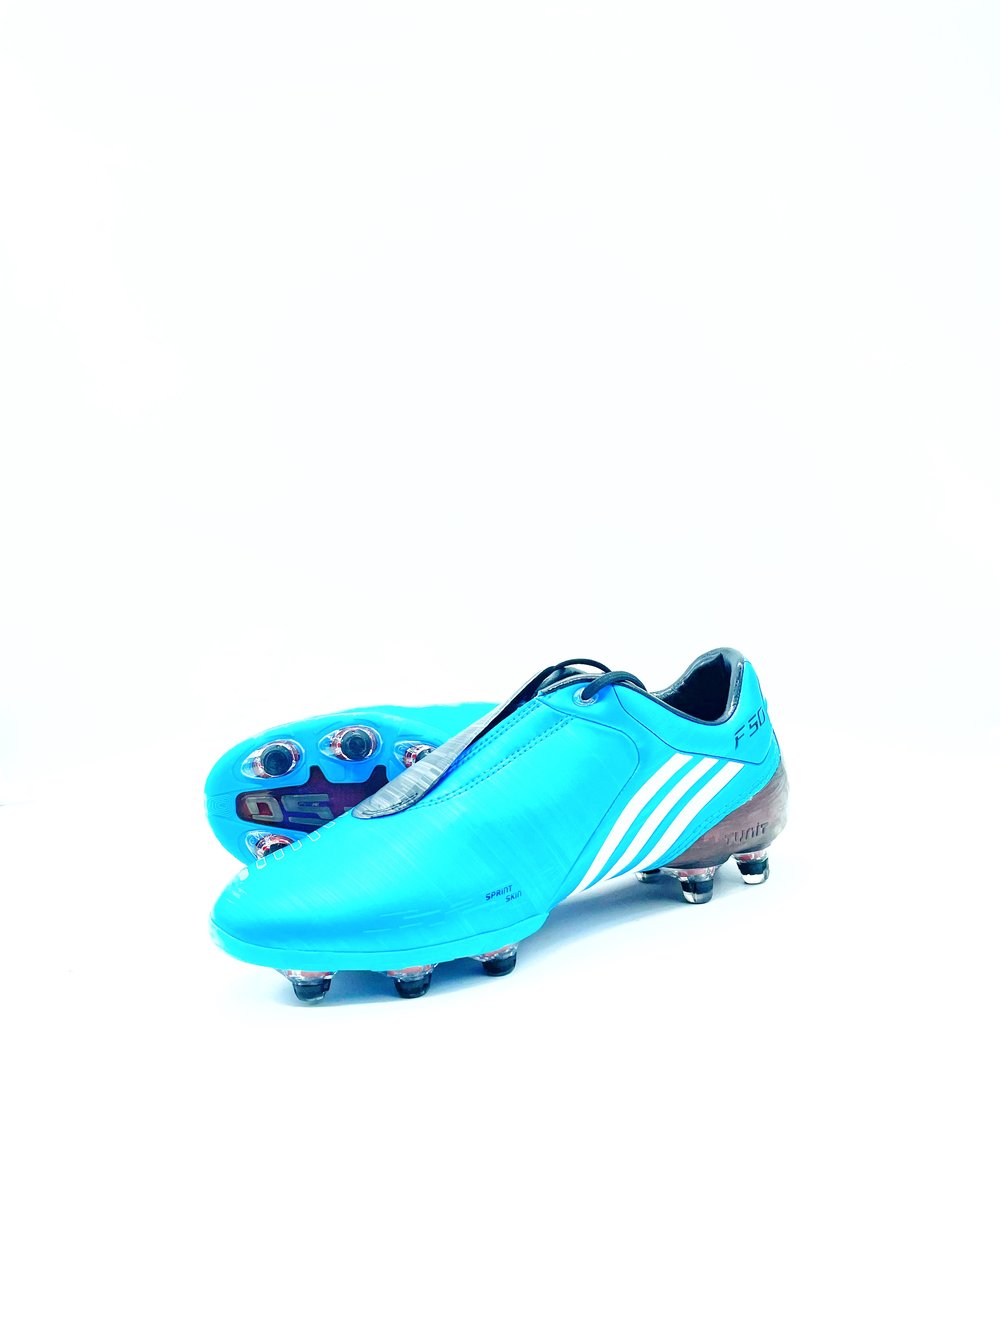 Tbtclassicfootballboots — Adidas F50 I Fg